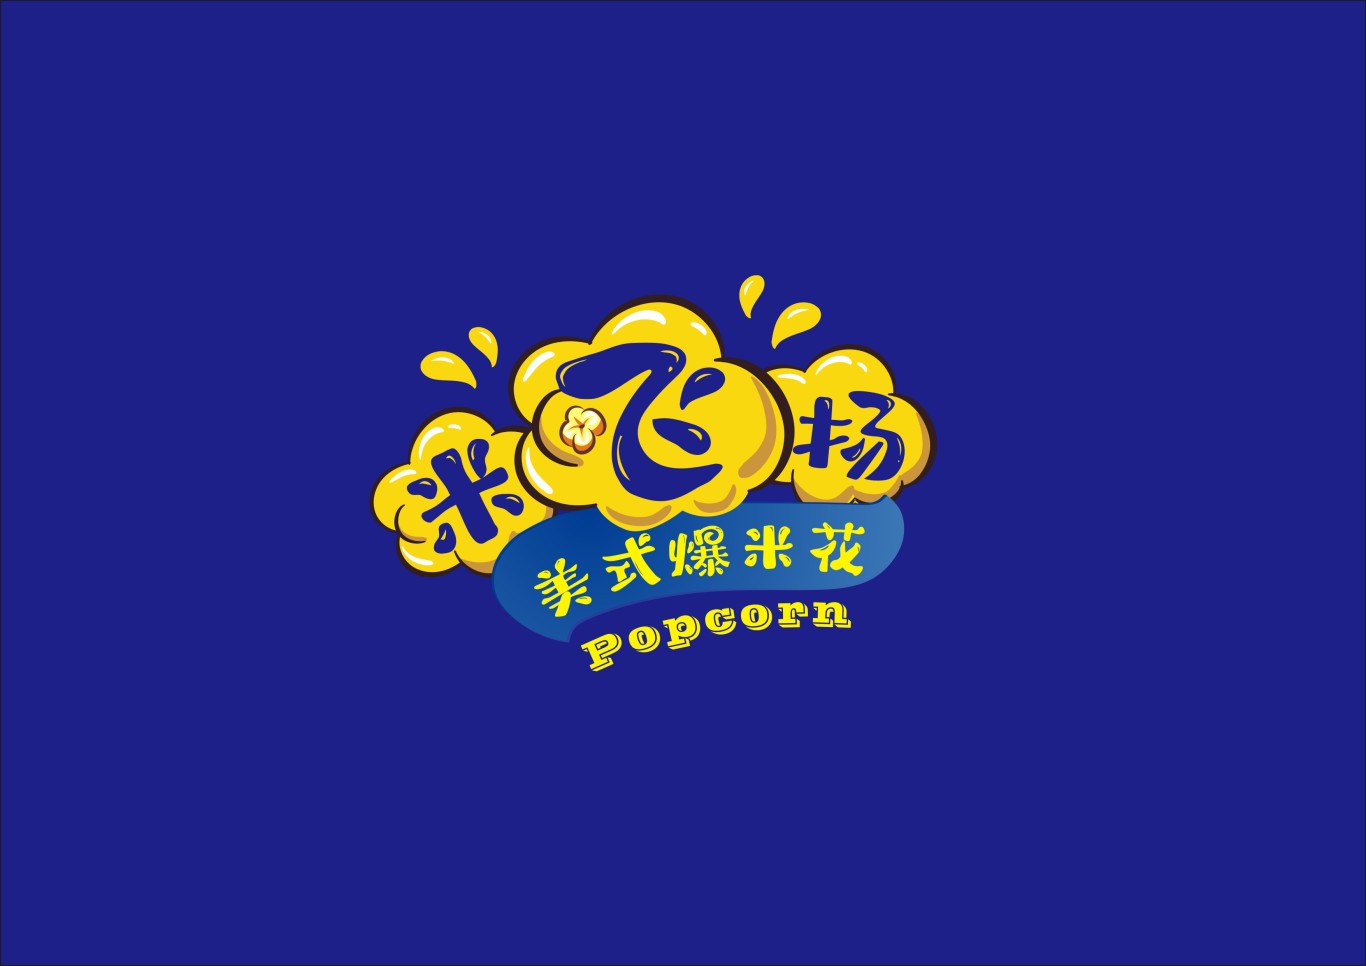 米飛揚爆米花logo圖1